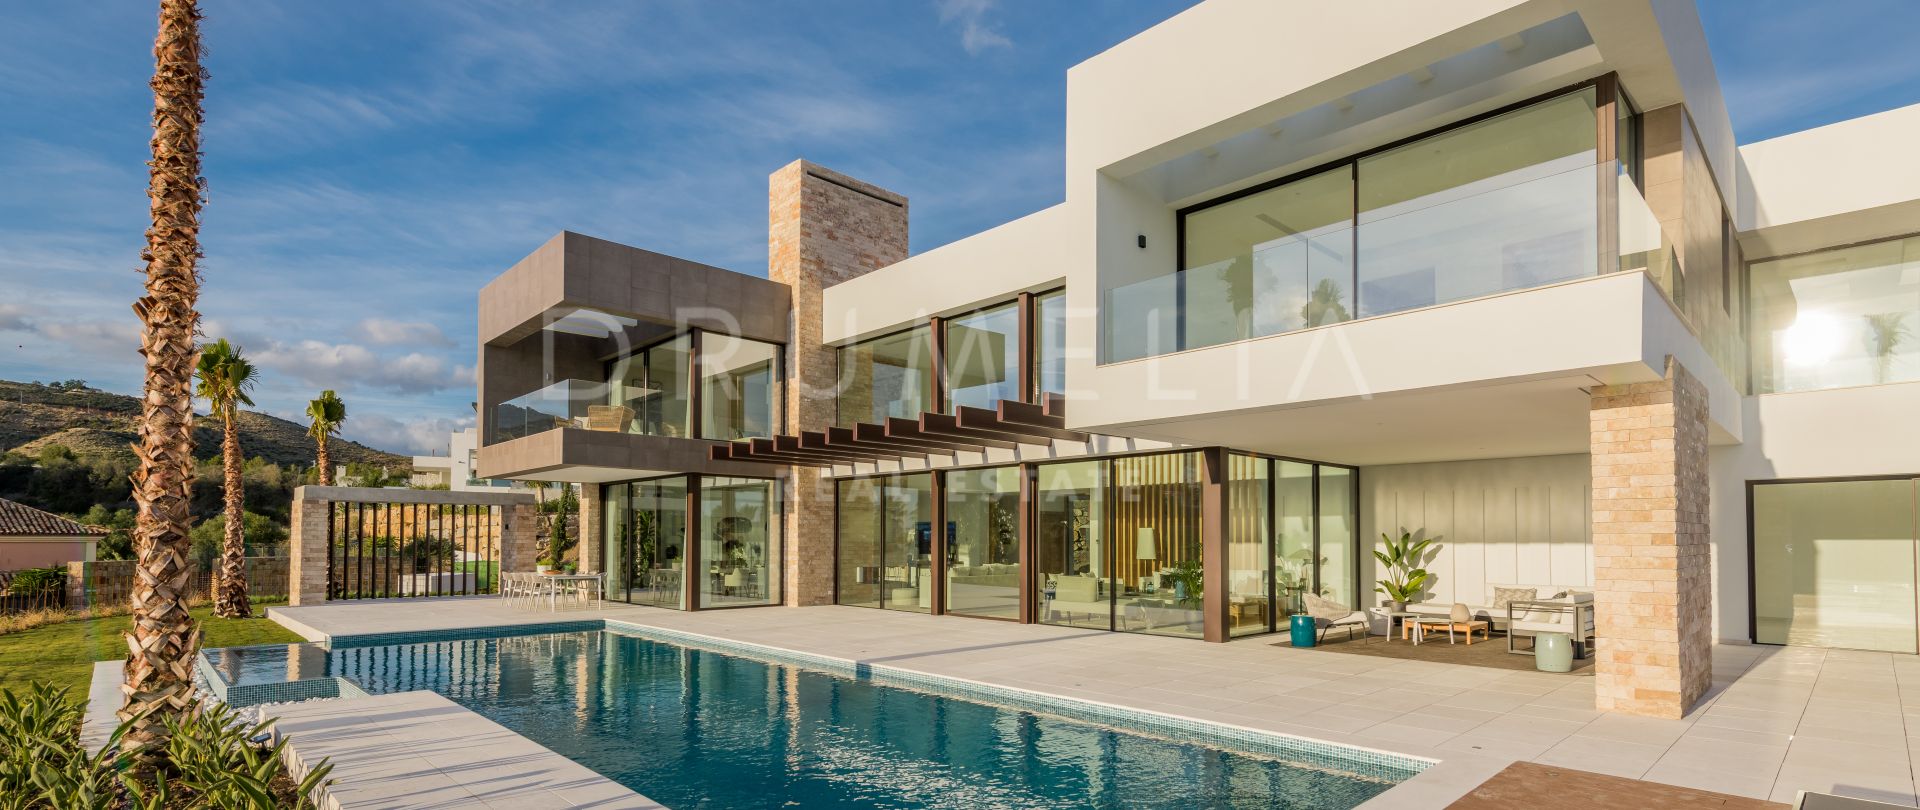 Brandneue atemberaubende, schicke Luxus-Villa im zeitgenössischen Stil in La Alqueria